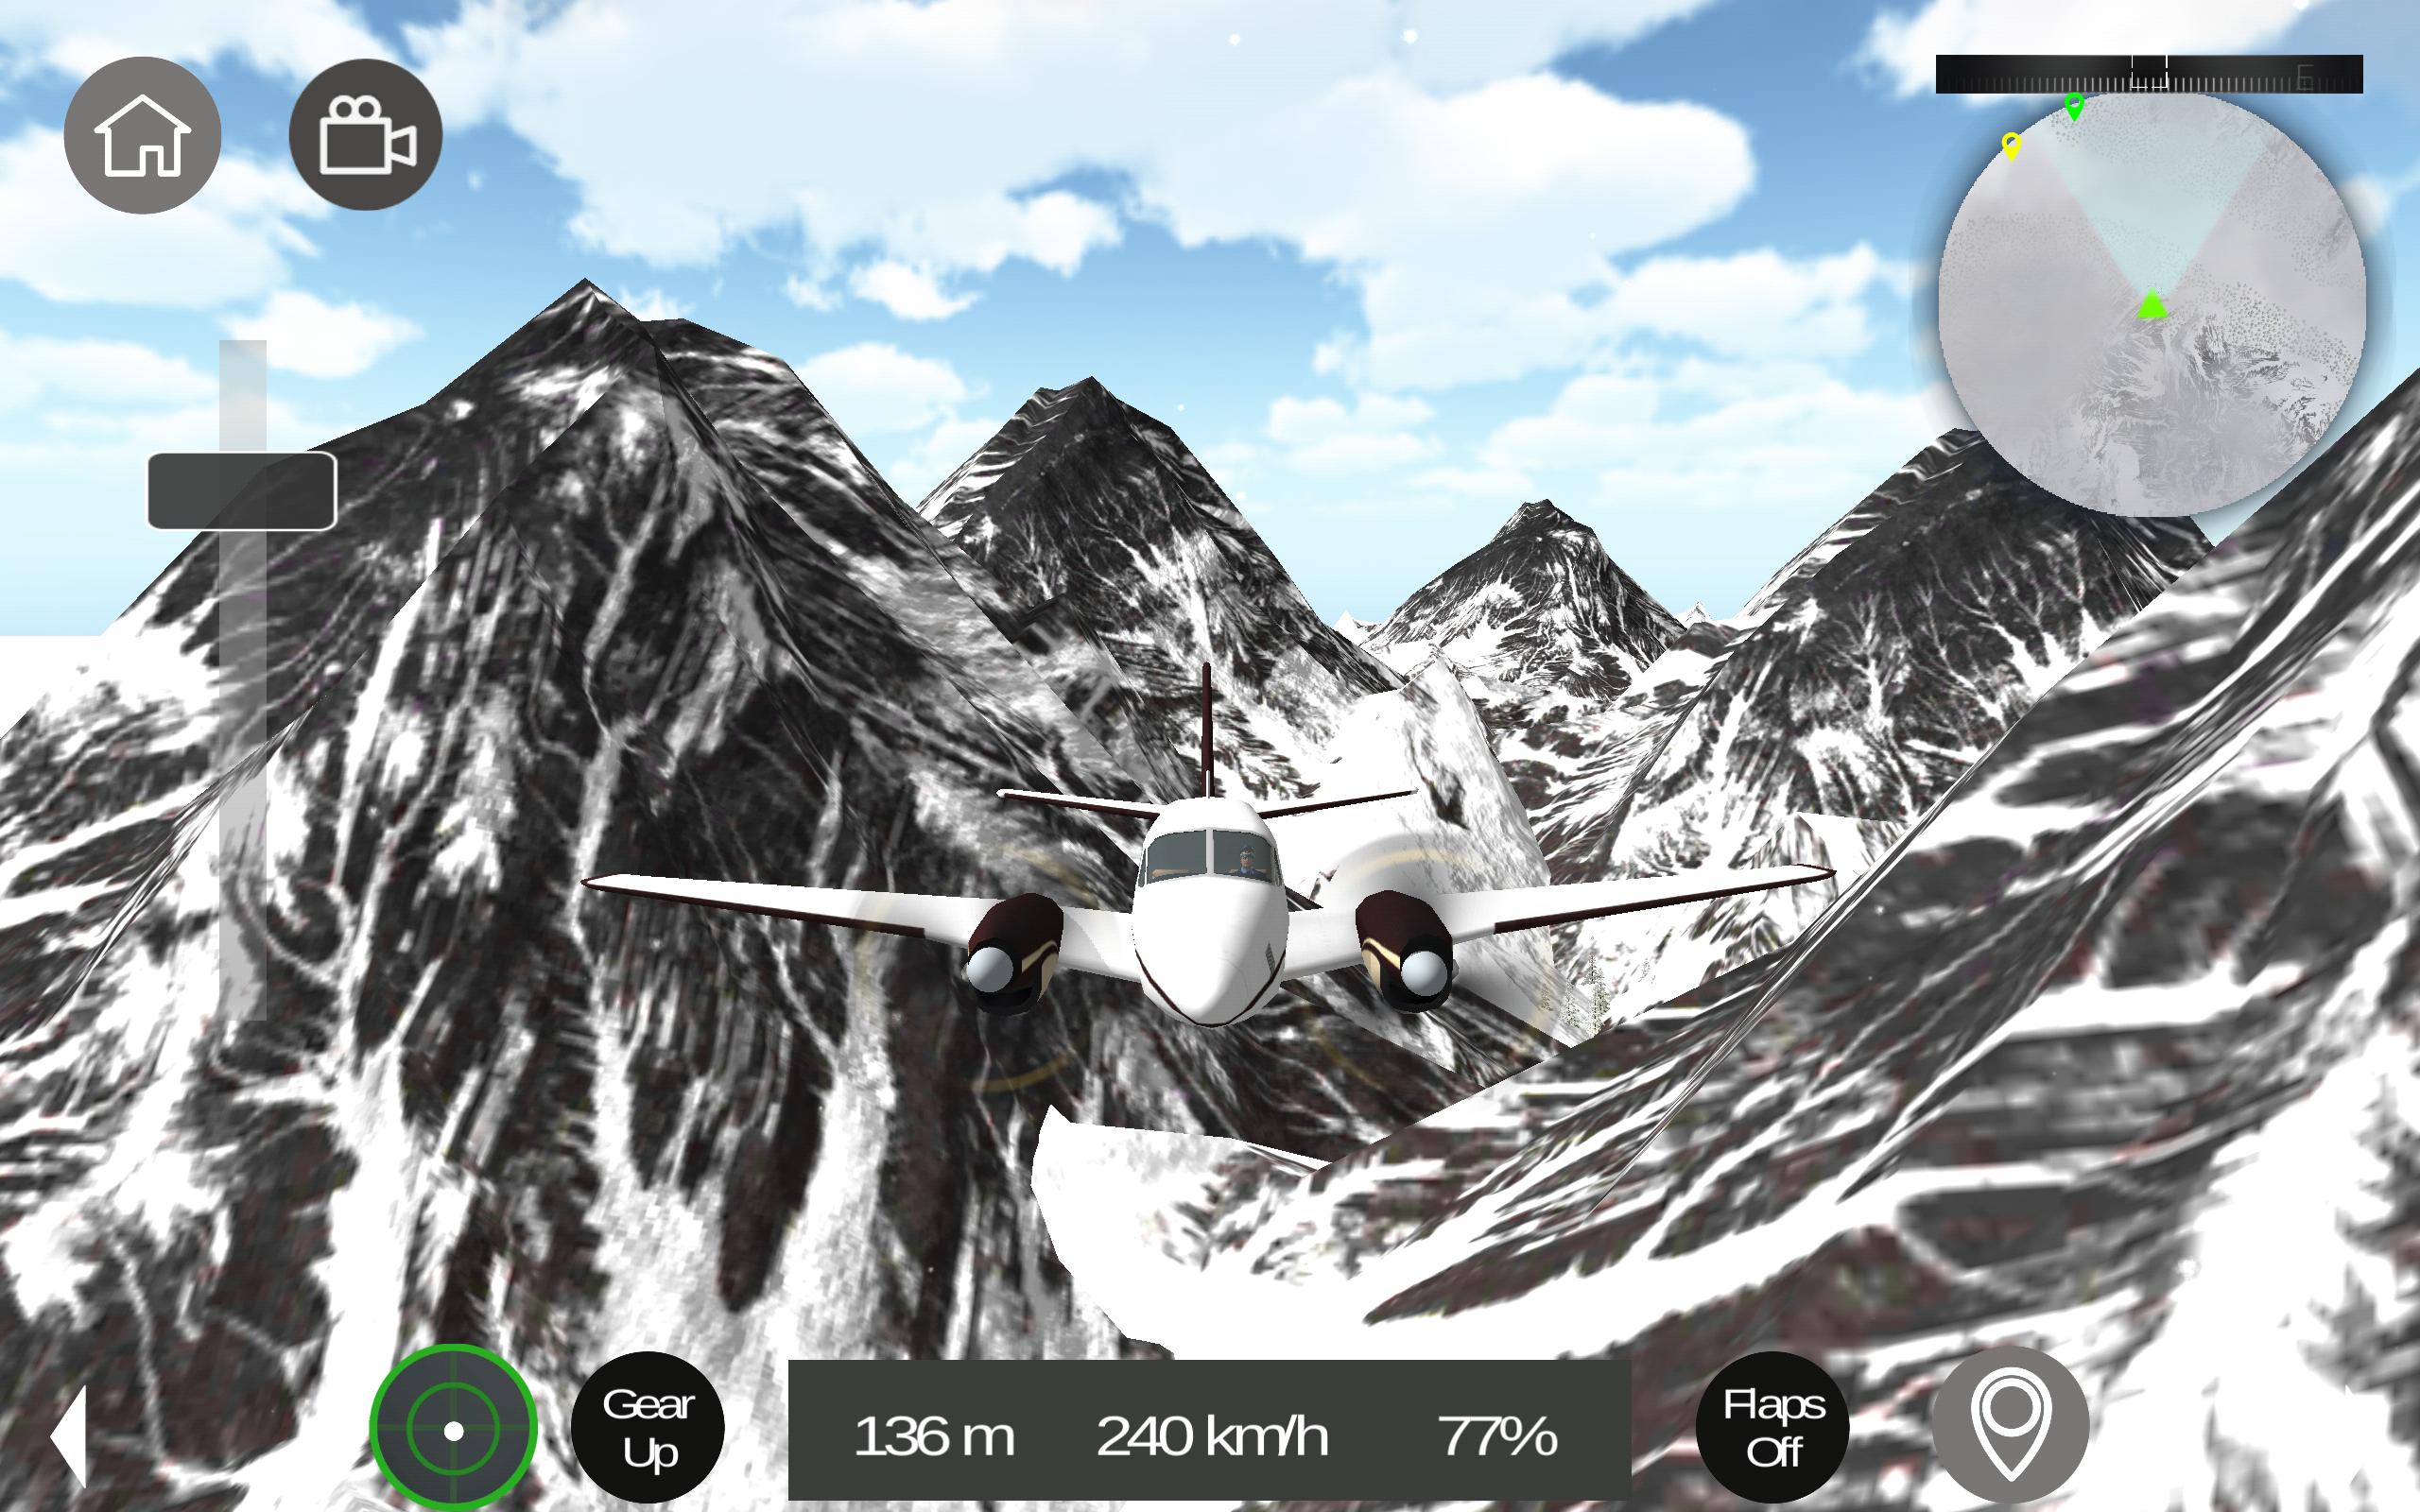 Читы на играх летать. Игра про управление железнодорожными станциями. Скриншот полёта на телефоне.